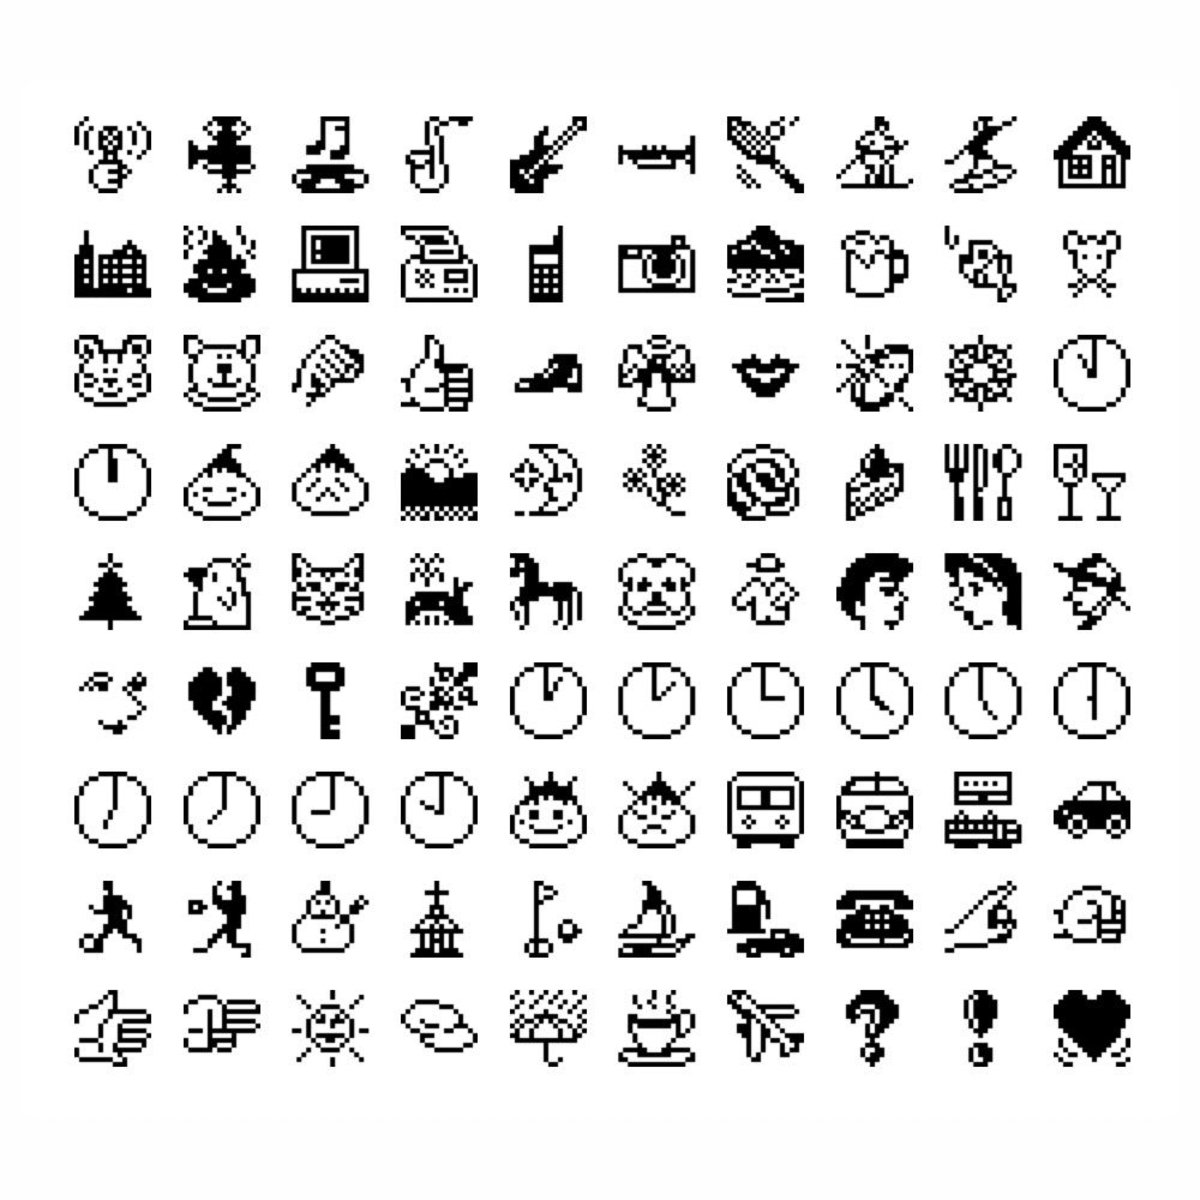 Estos son los emojis más antiguos de la historia, y así han evolucionado